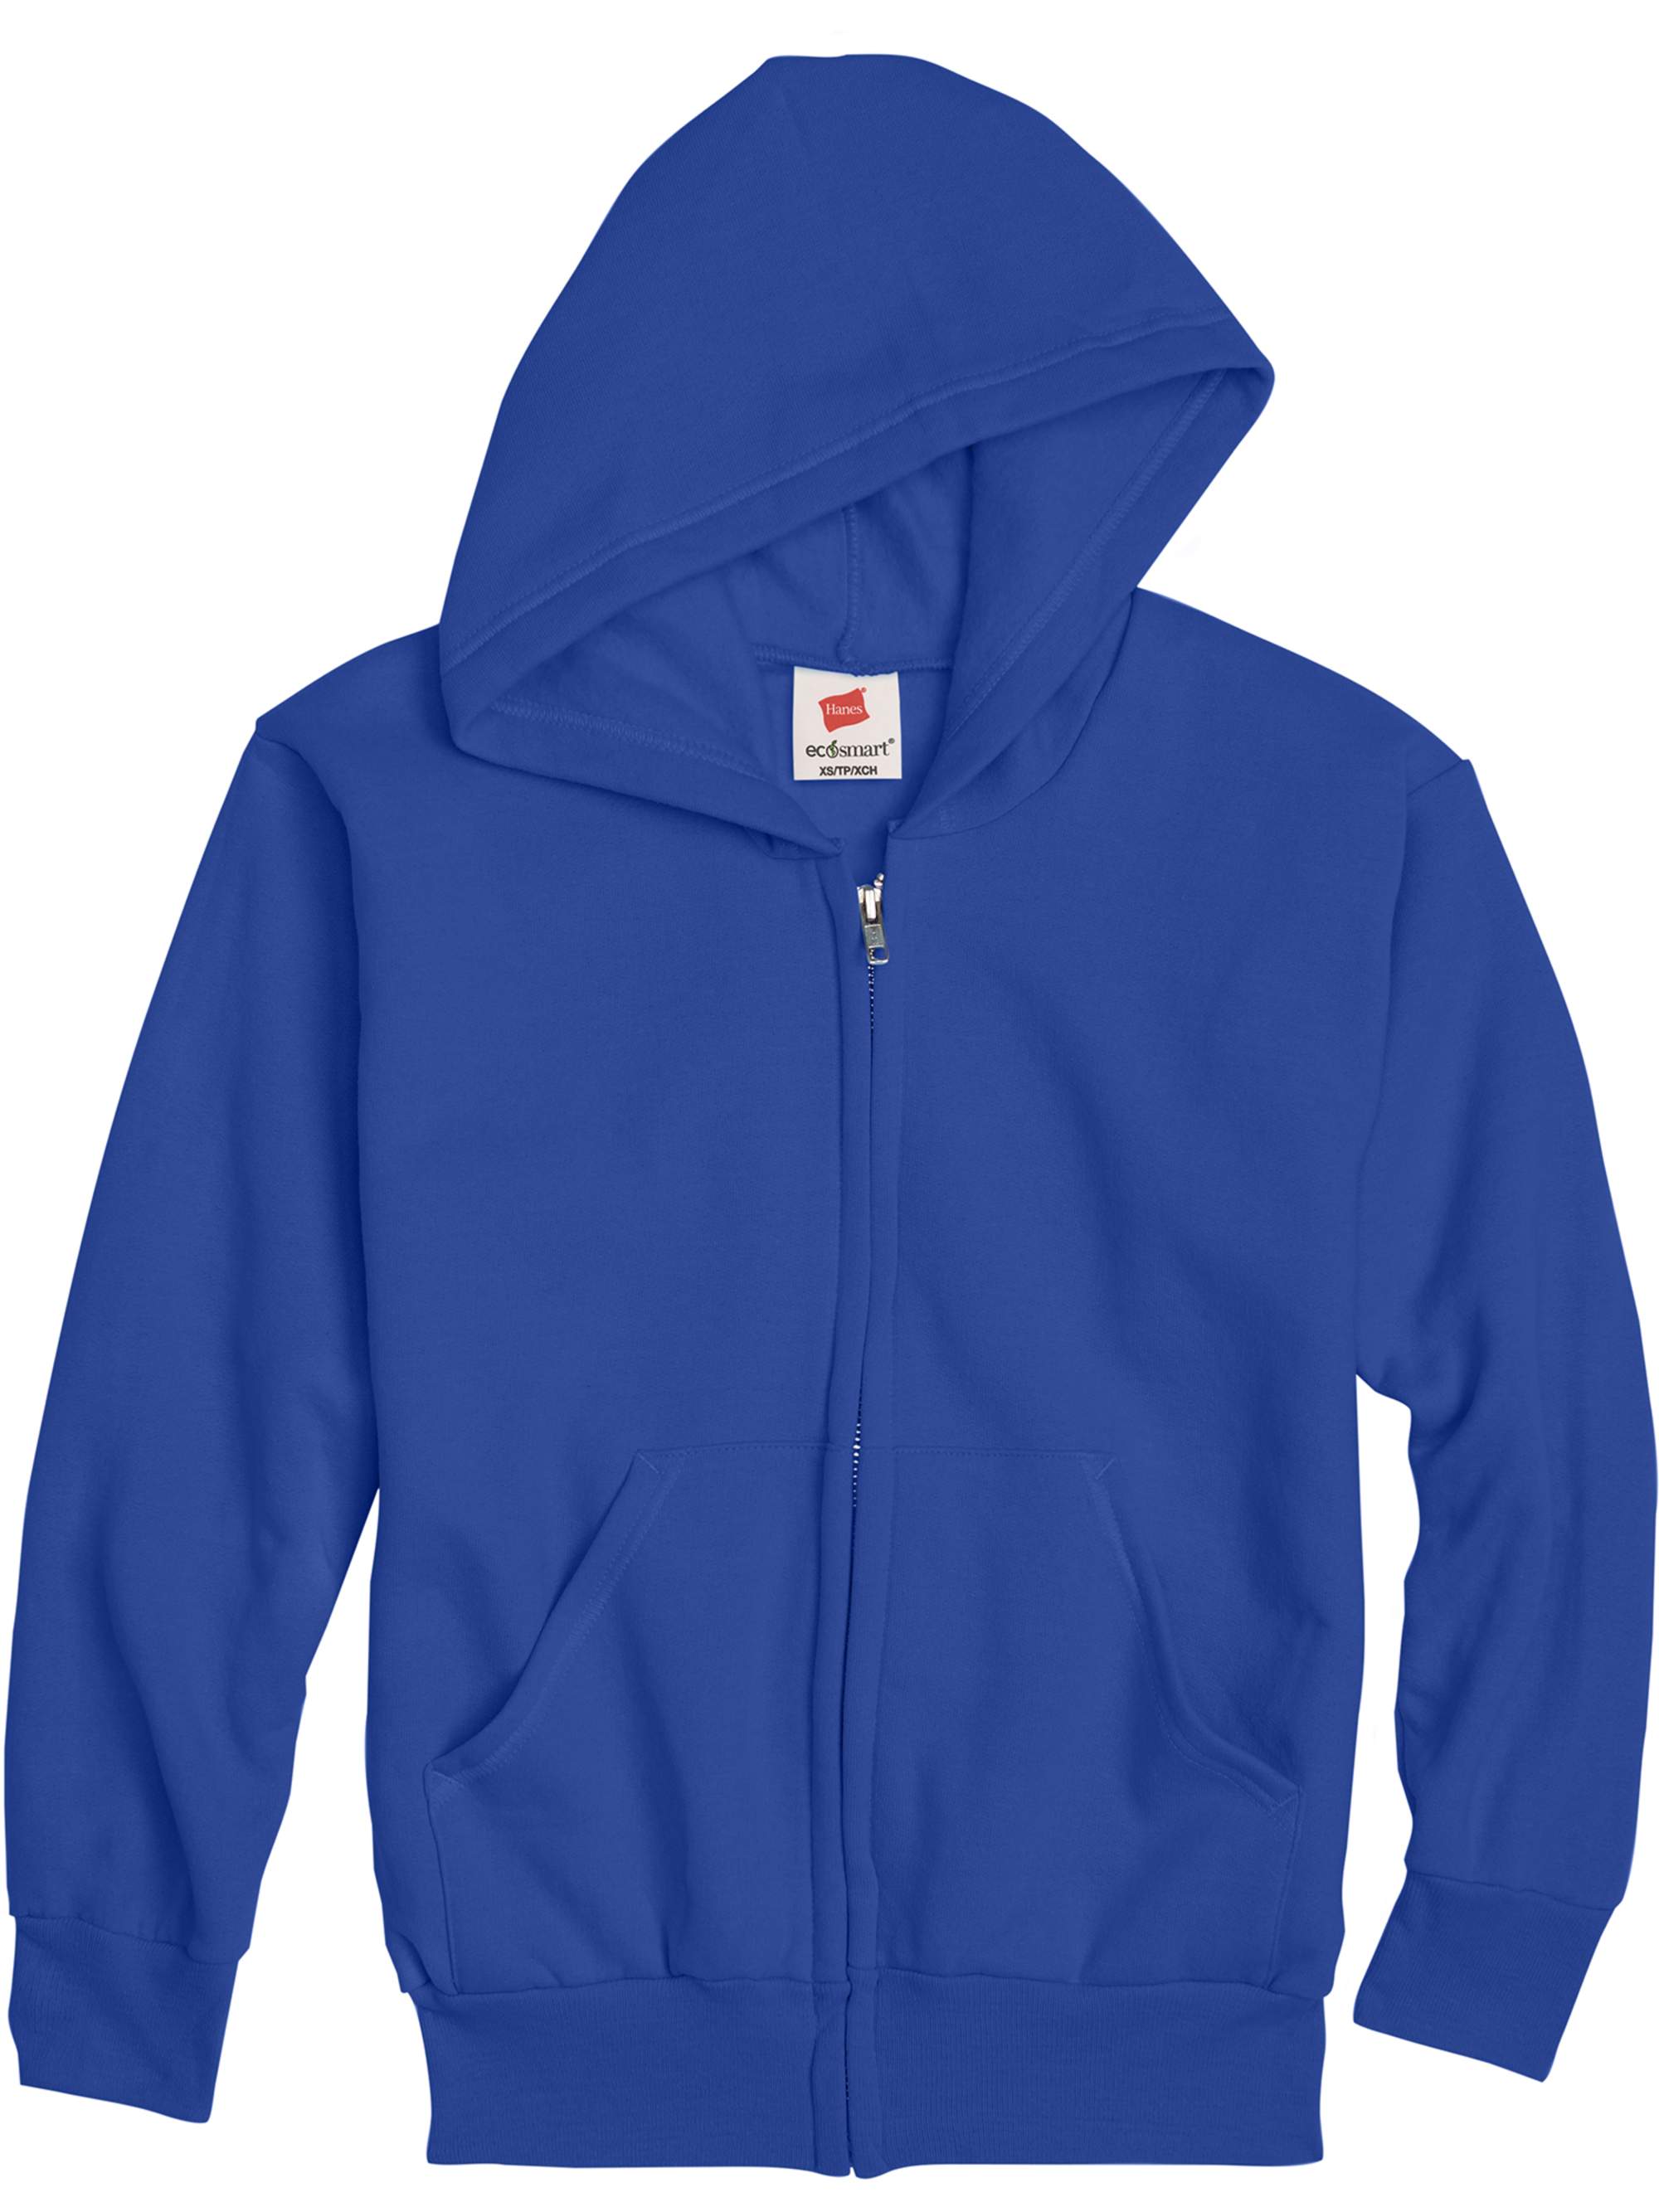 Hanes Boys EcoSmart Fleece Full Zip Hooded Jacket, Sizes 4-18 - image 1 of 5